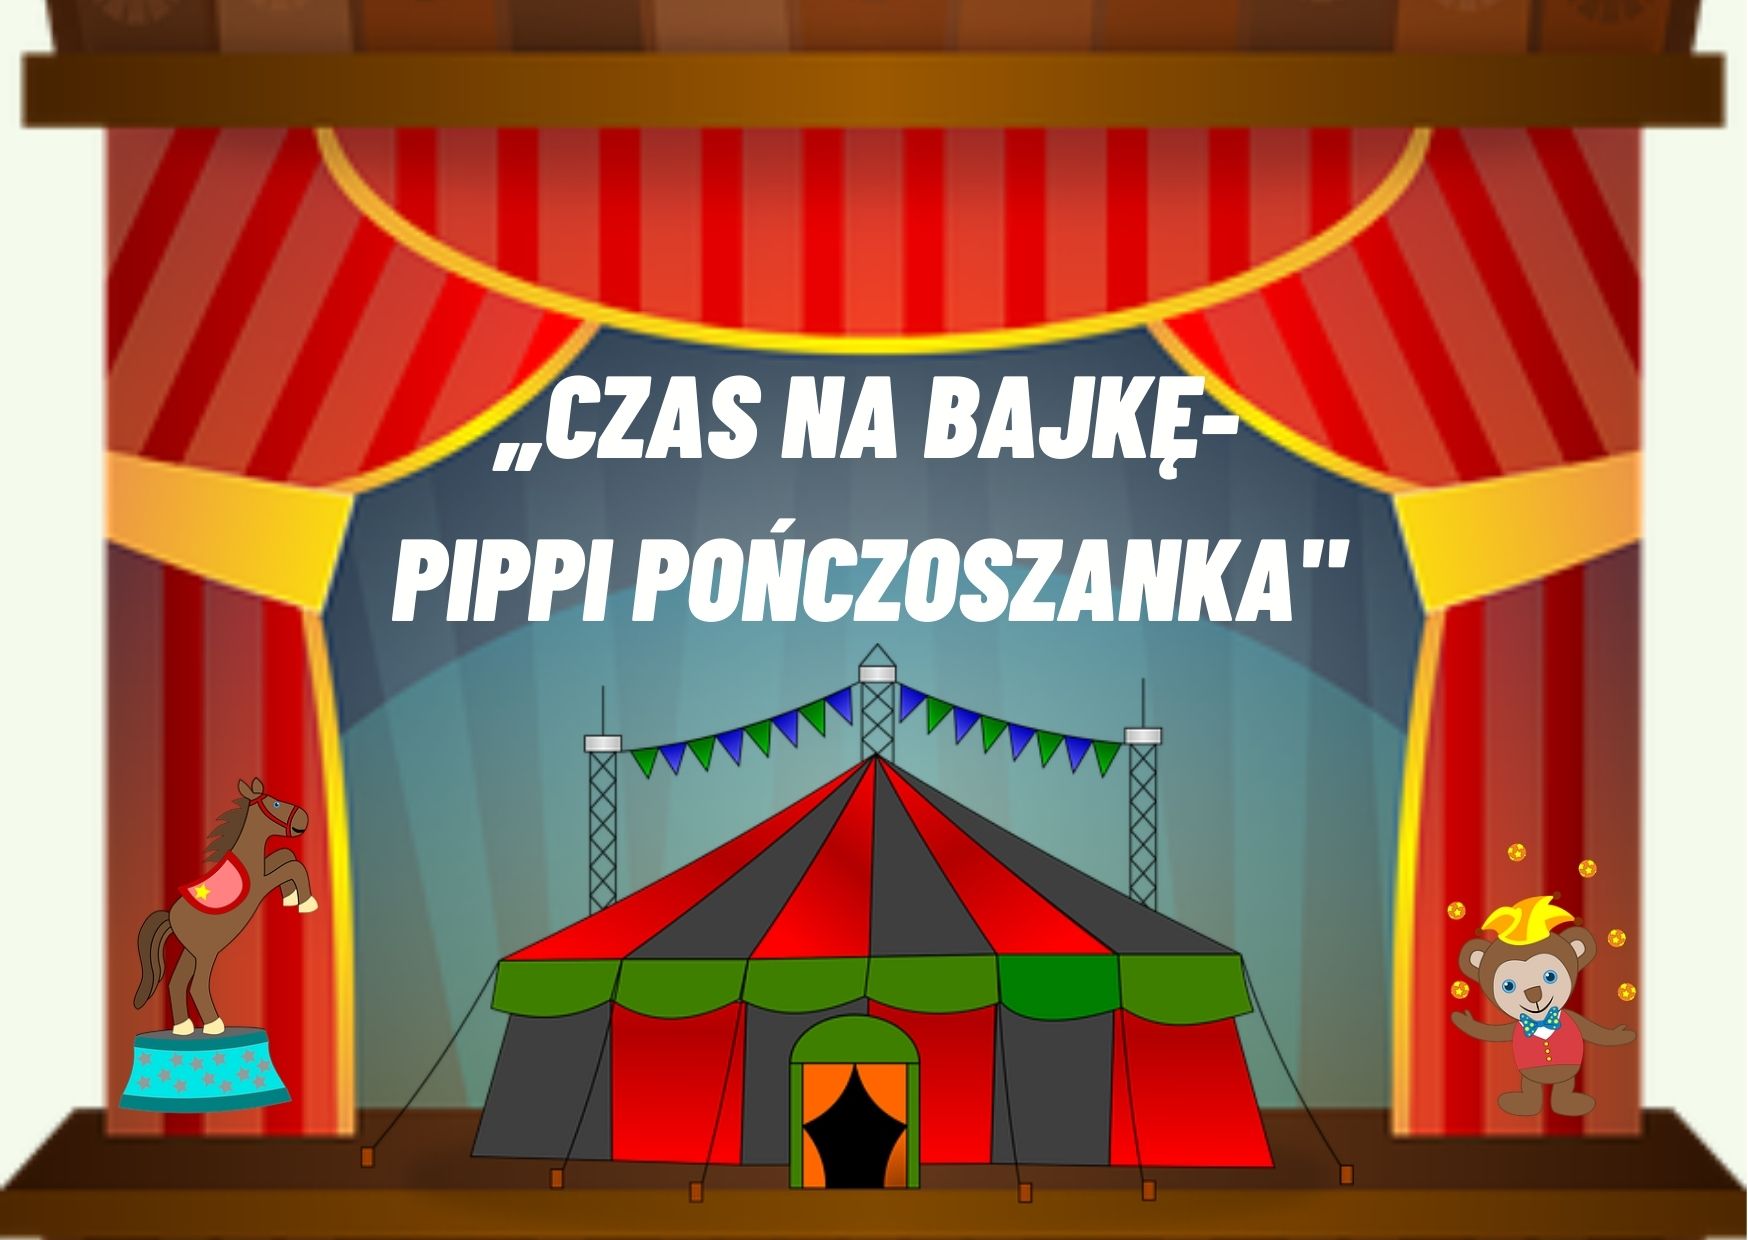 Czas na bajkę – Pippi Pończoszanka